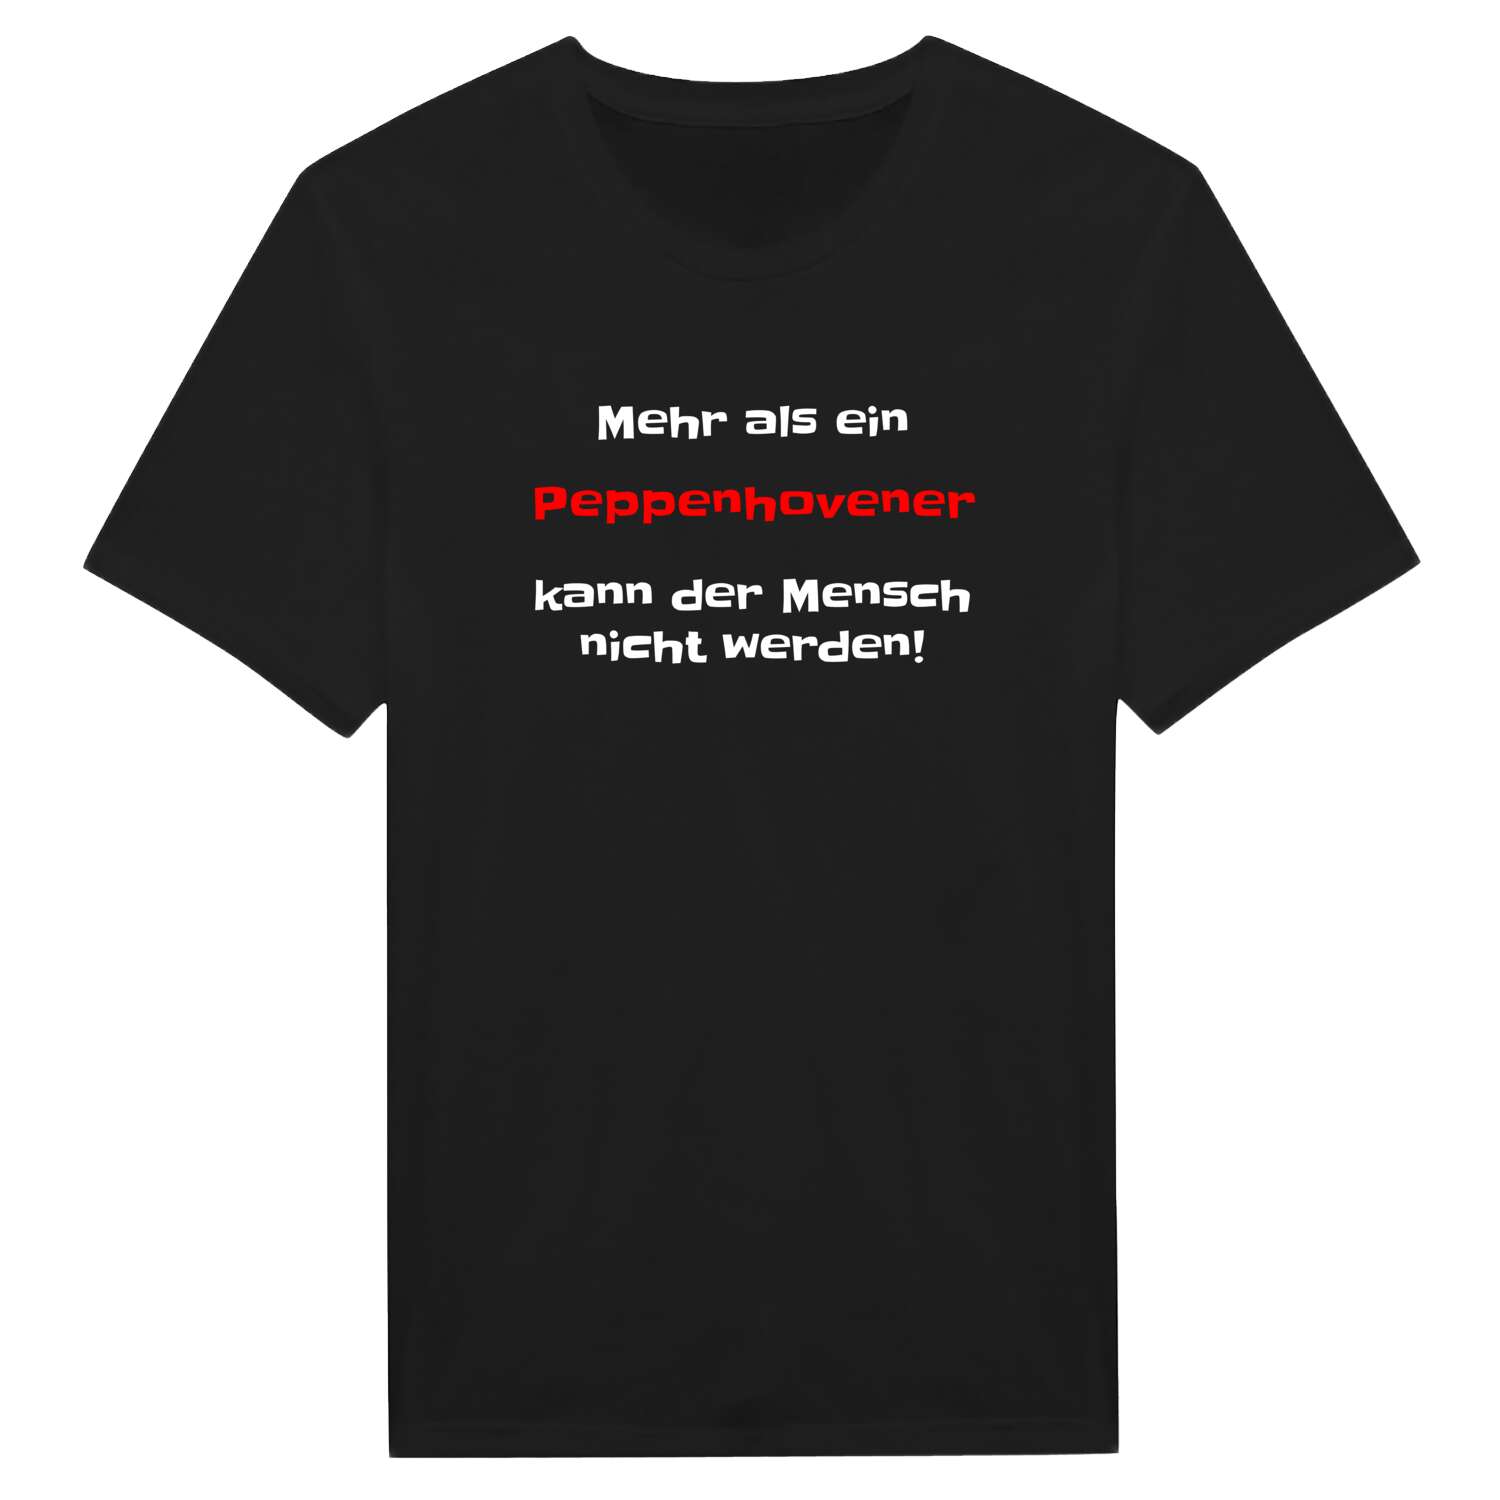 Peppenhoven T-Shirt »Mehr als ein«